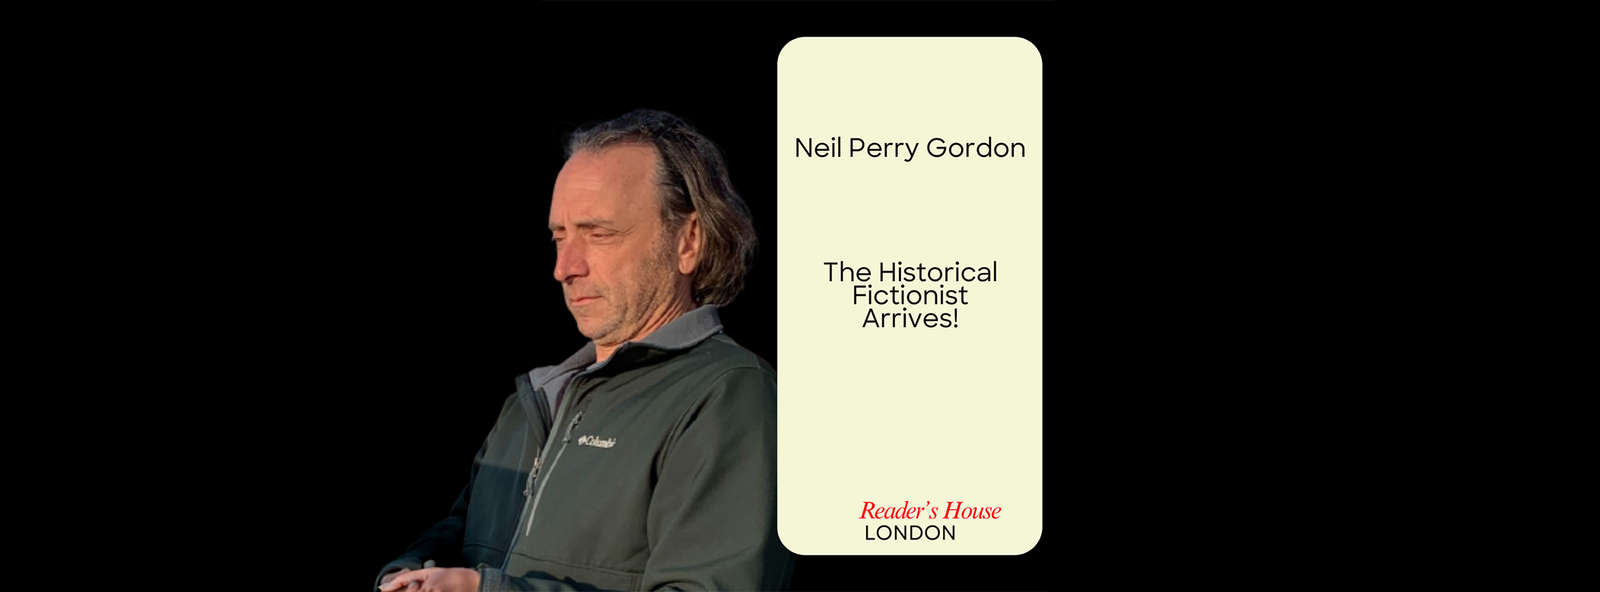 Neil Perry Gordon